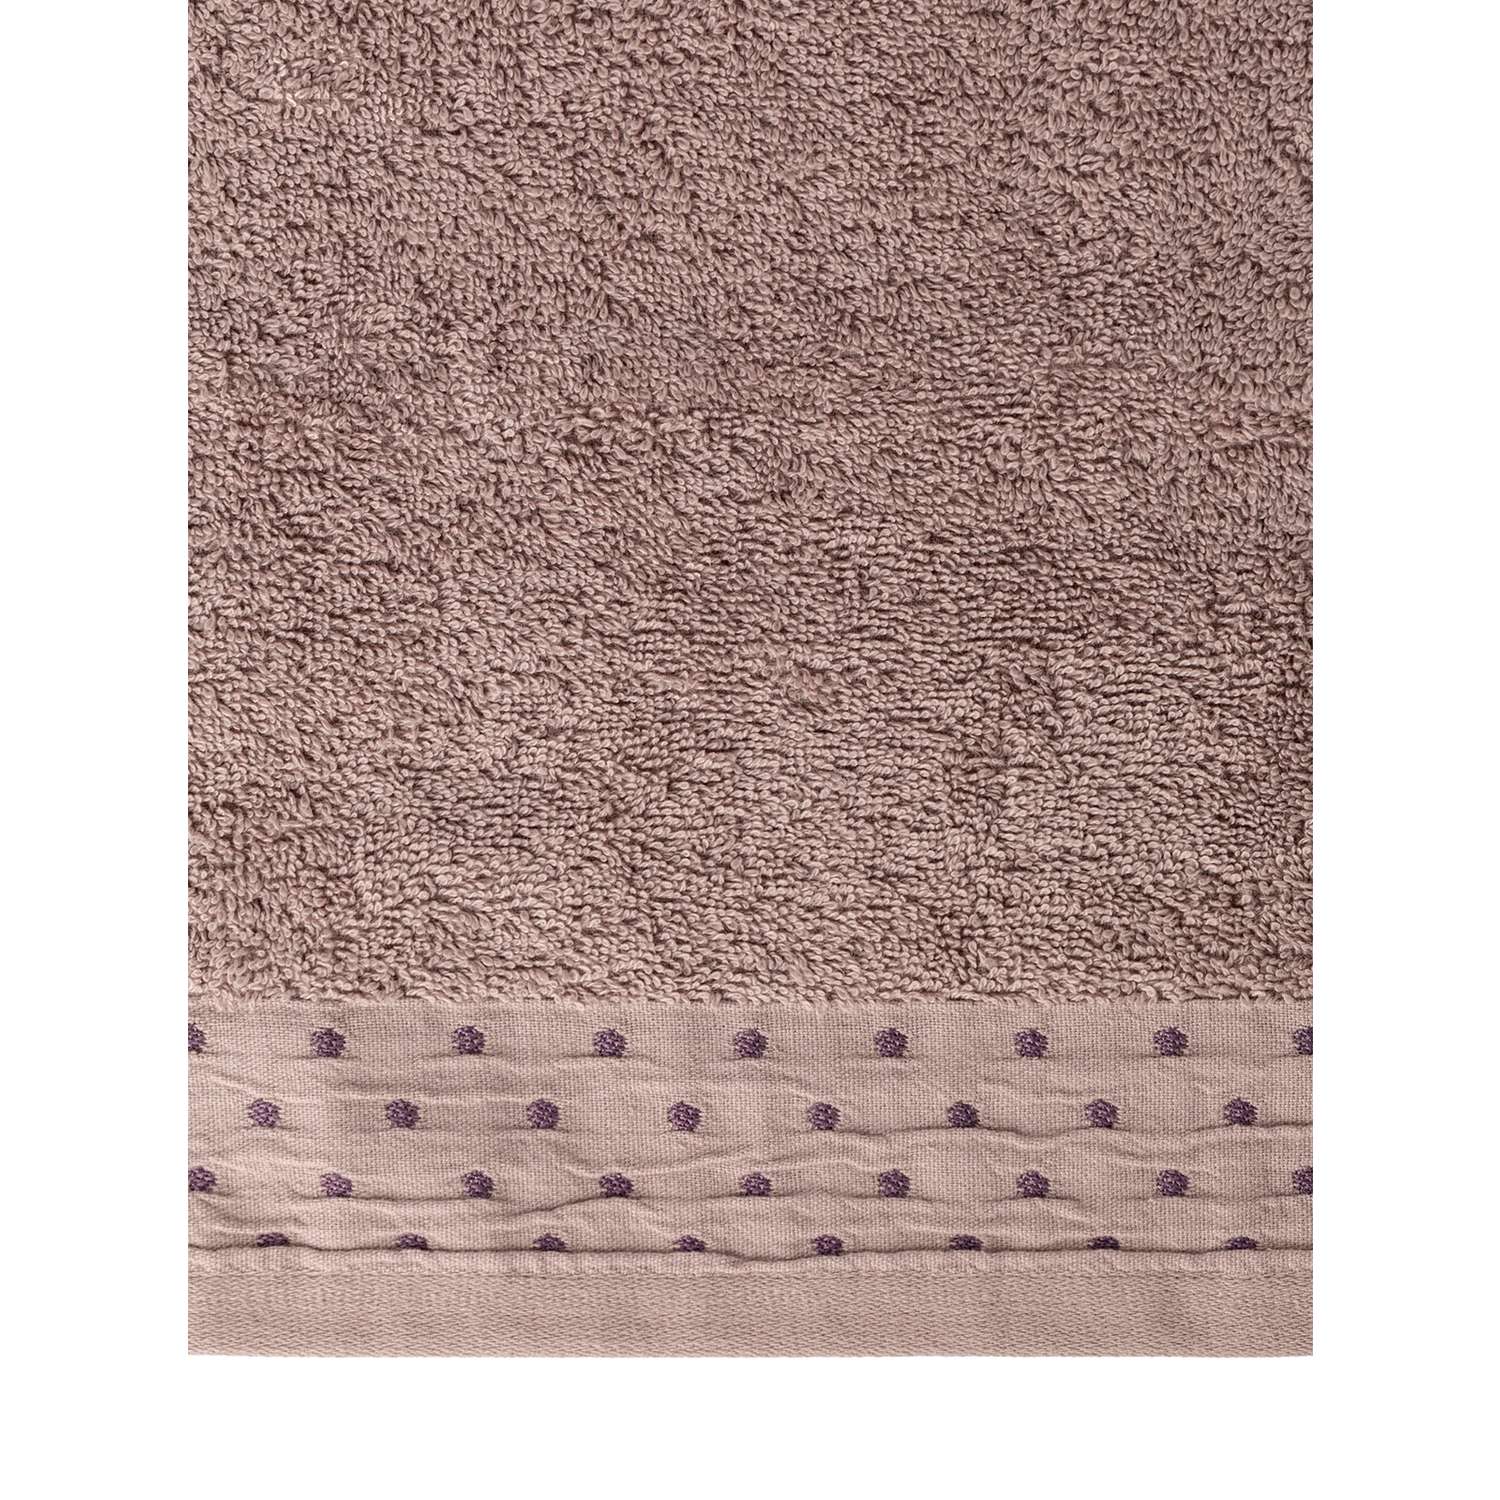 Полотенце махровое LUCKY с бордюром 35x70 см 100% хлопок светло-коричневый D100311 - фото 4